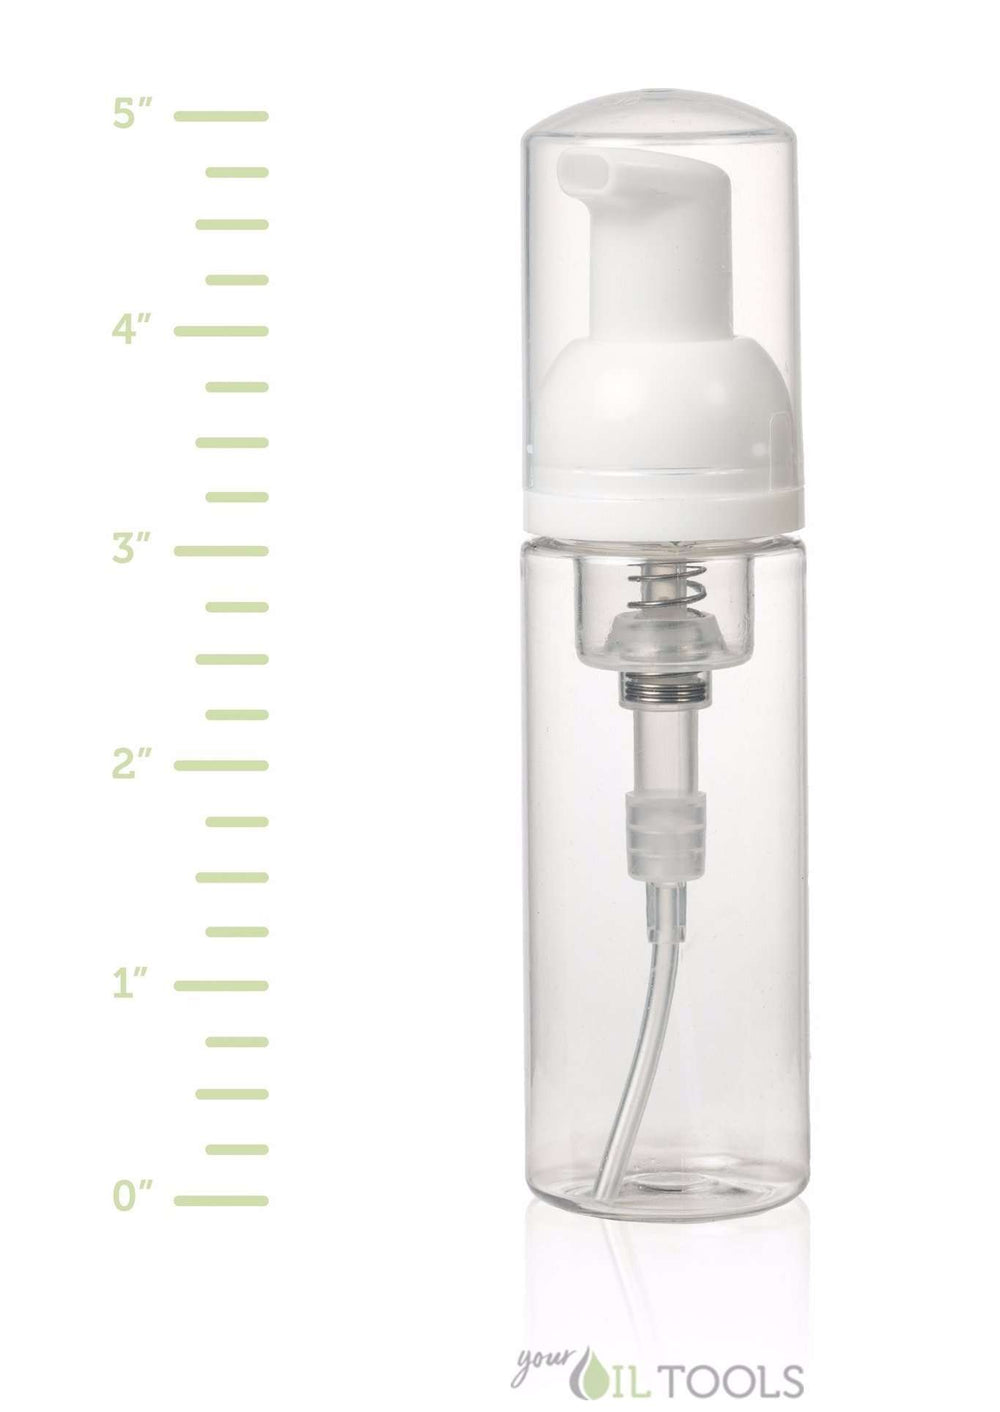 8.5 oz Foamer Pump Bottle (Clear)